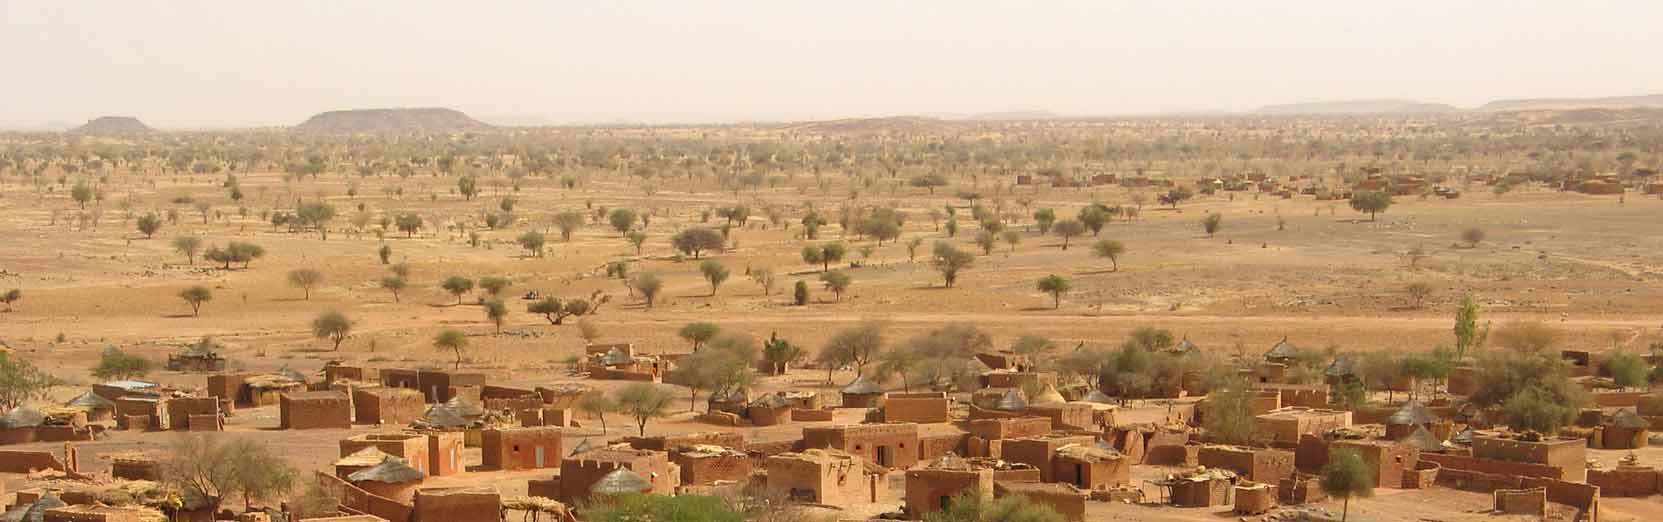 Auto mieten in Burkina Faso